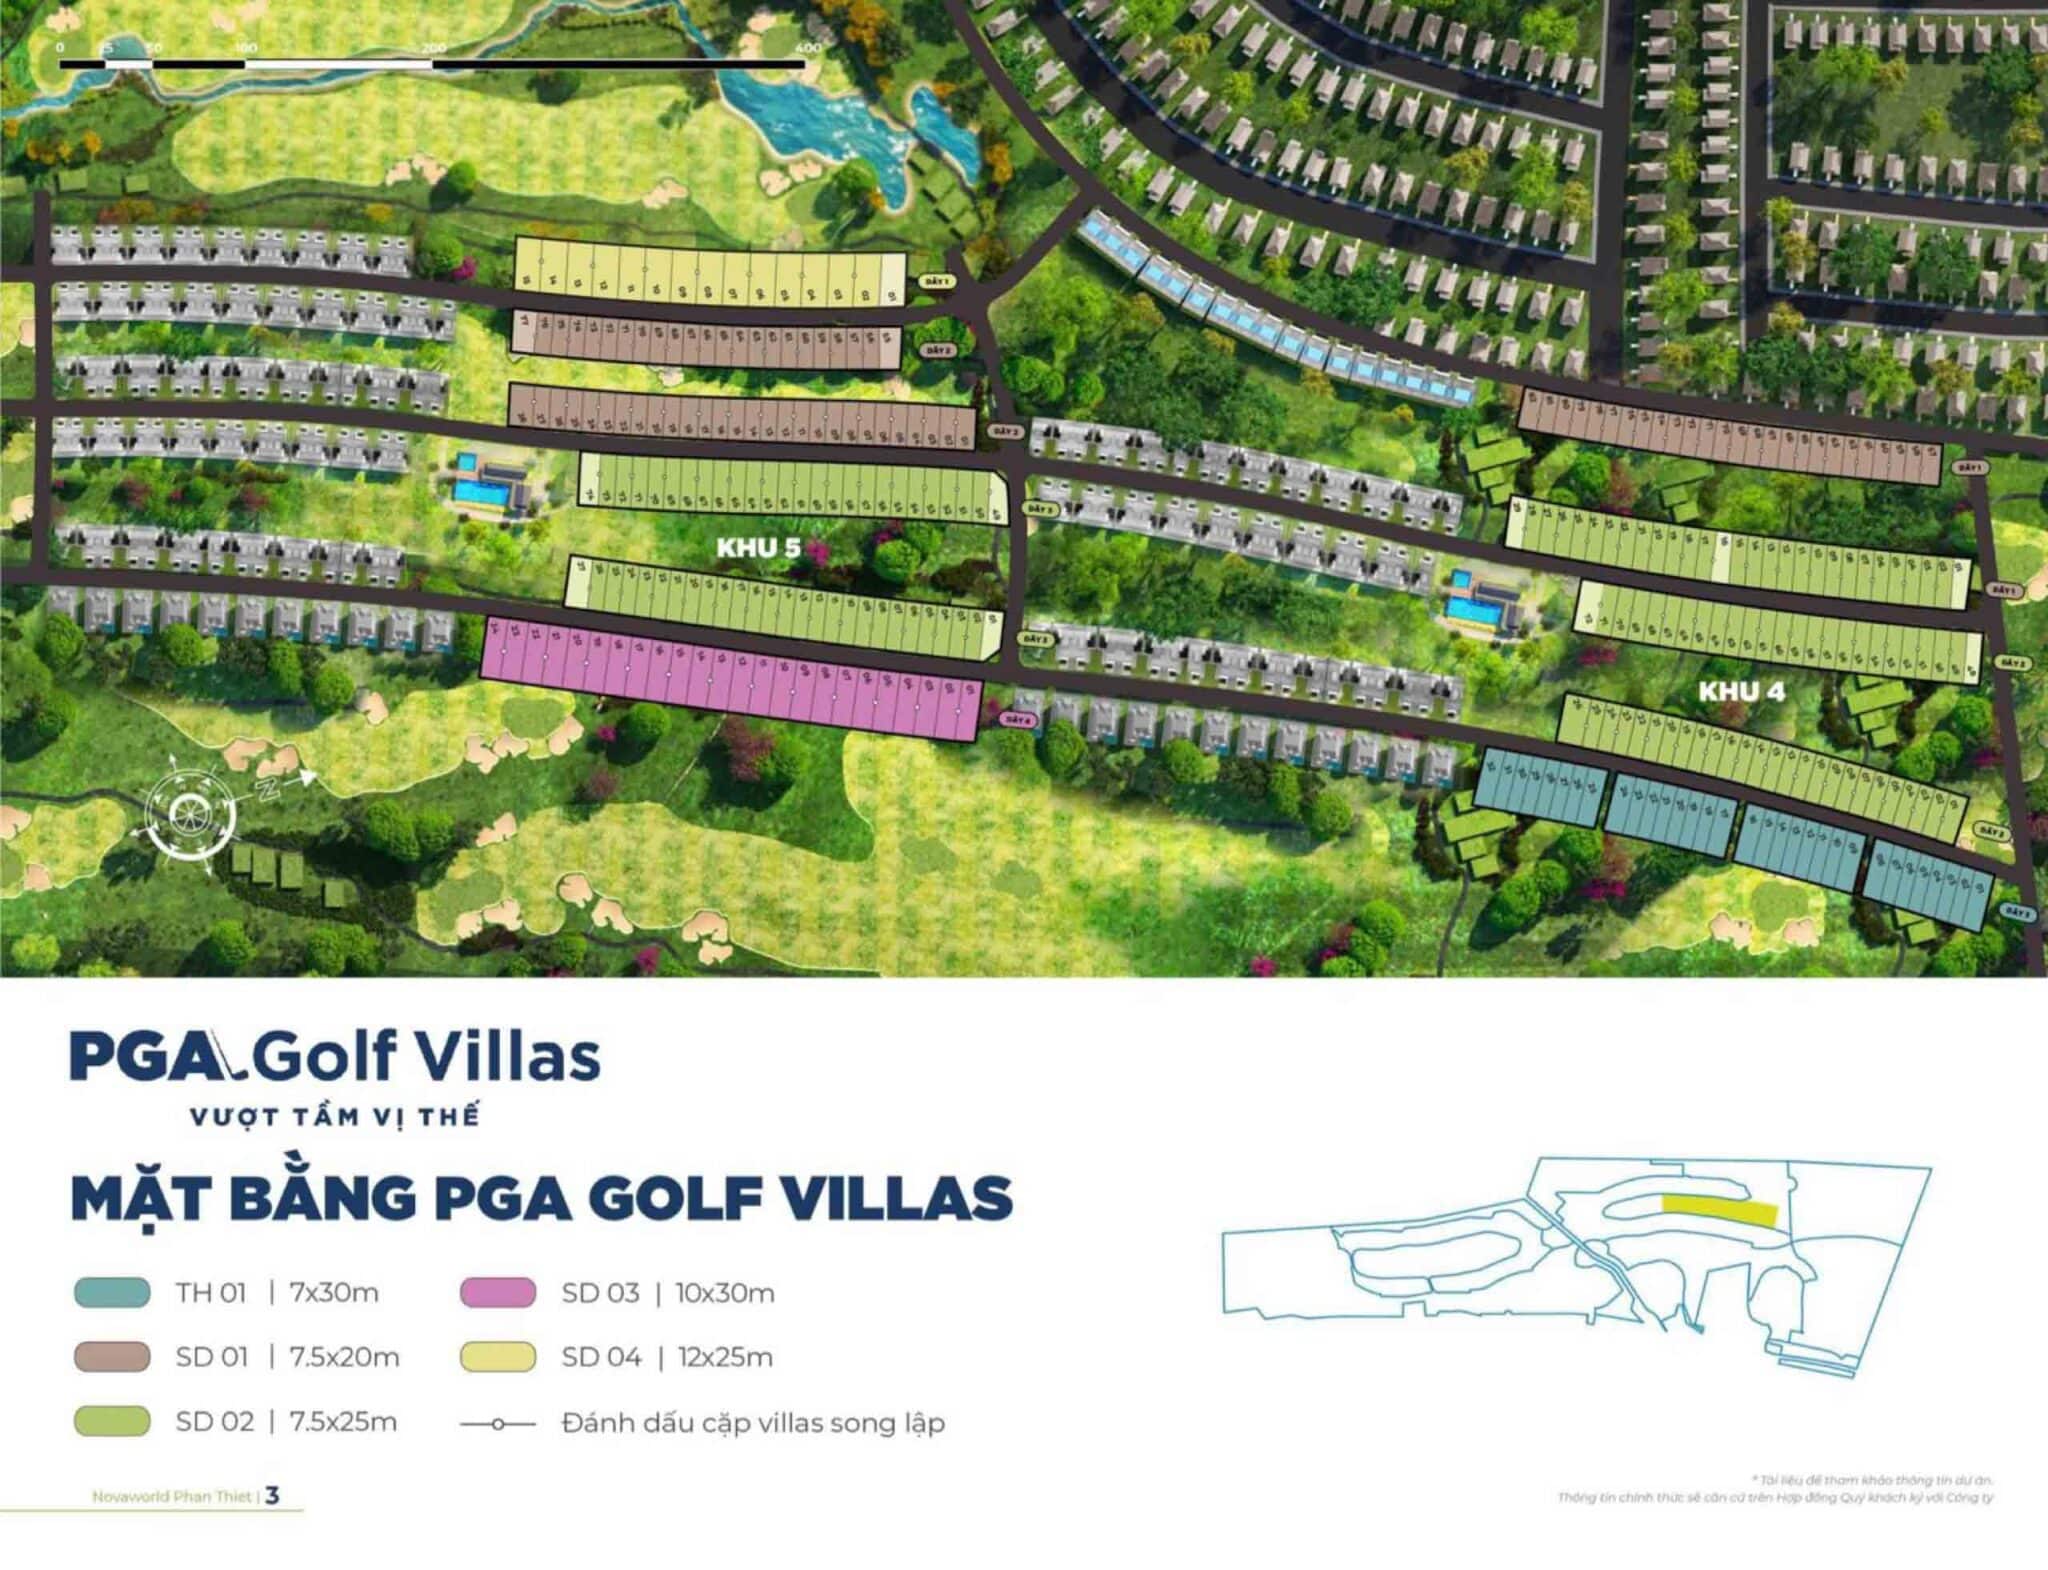 PGA Golf Villas là sản phẩm cao cấp nhất tại Siêu Dự án NovaWorld Phan Thiết